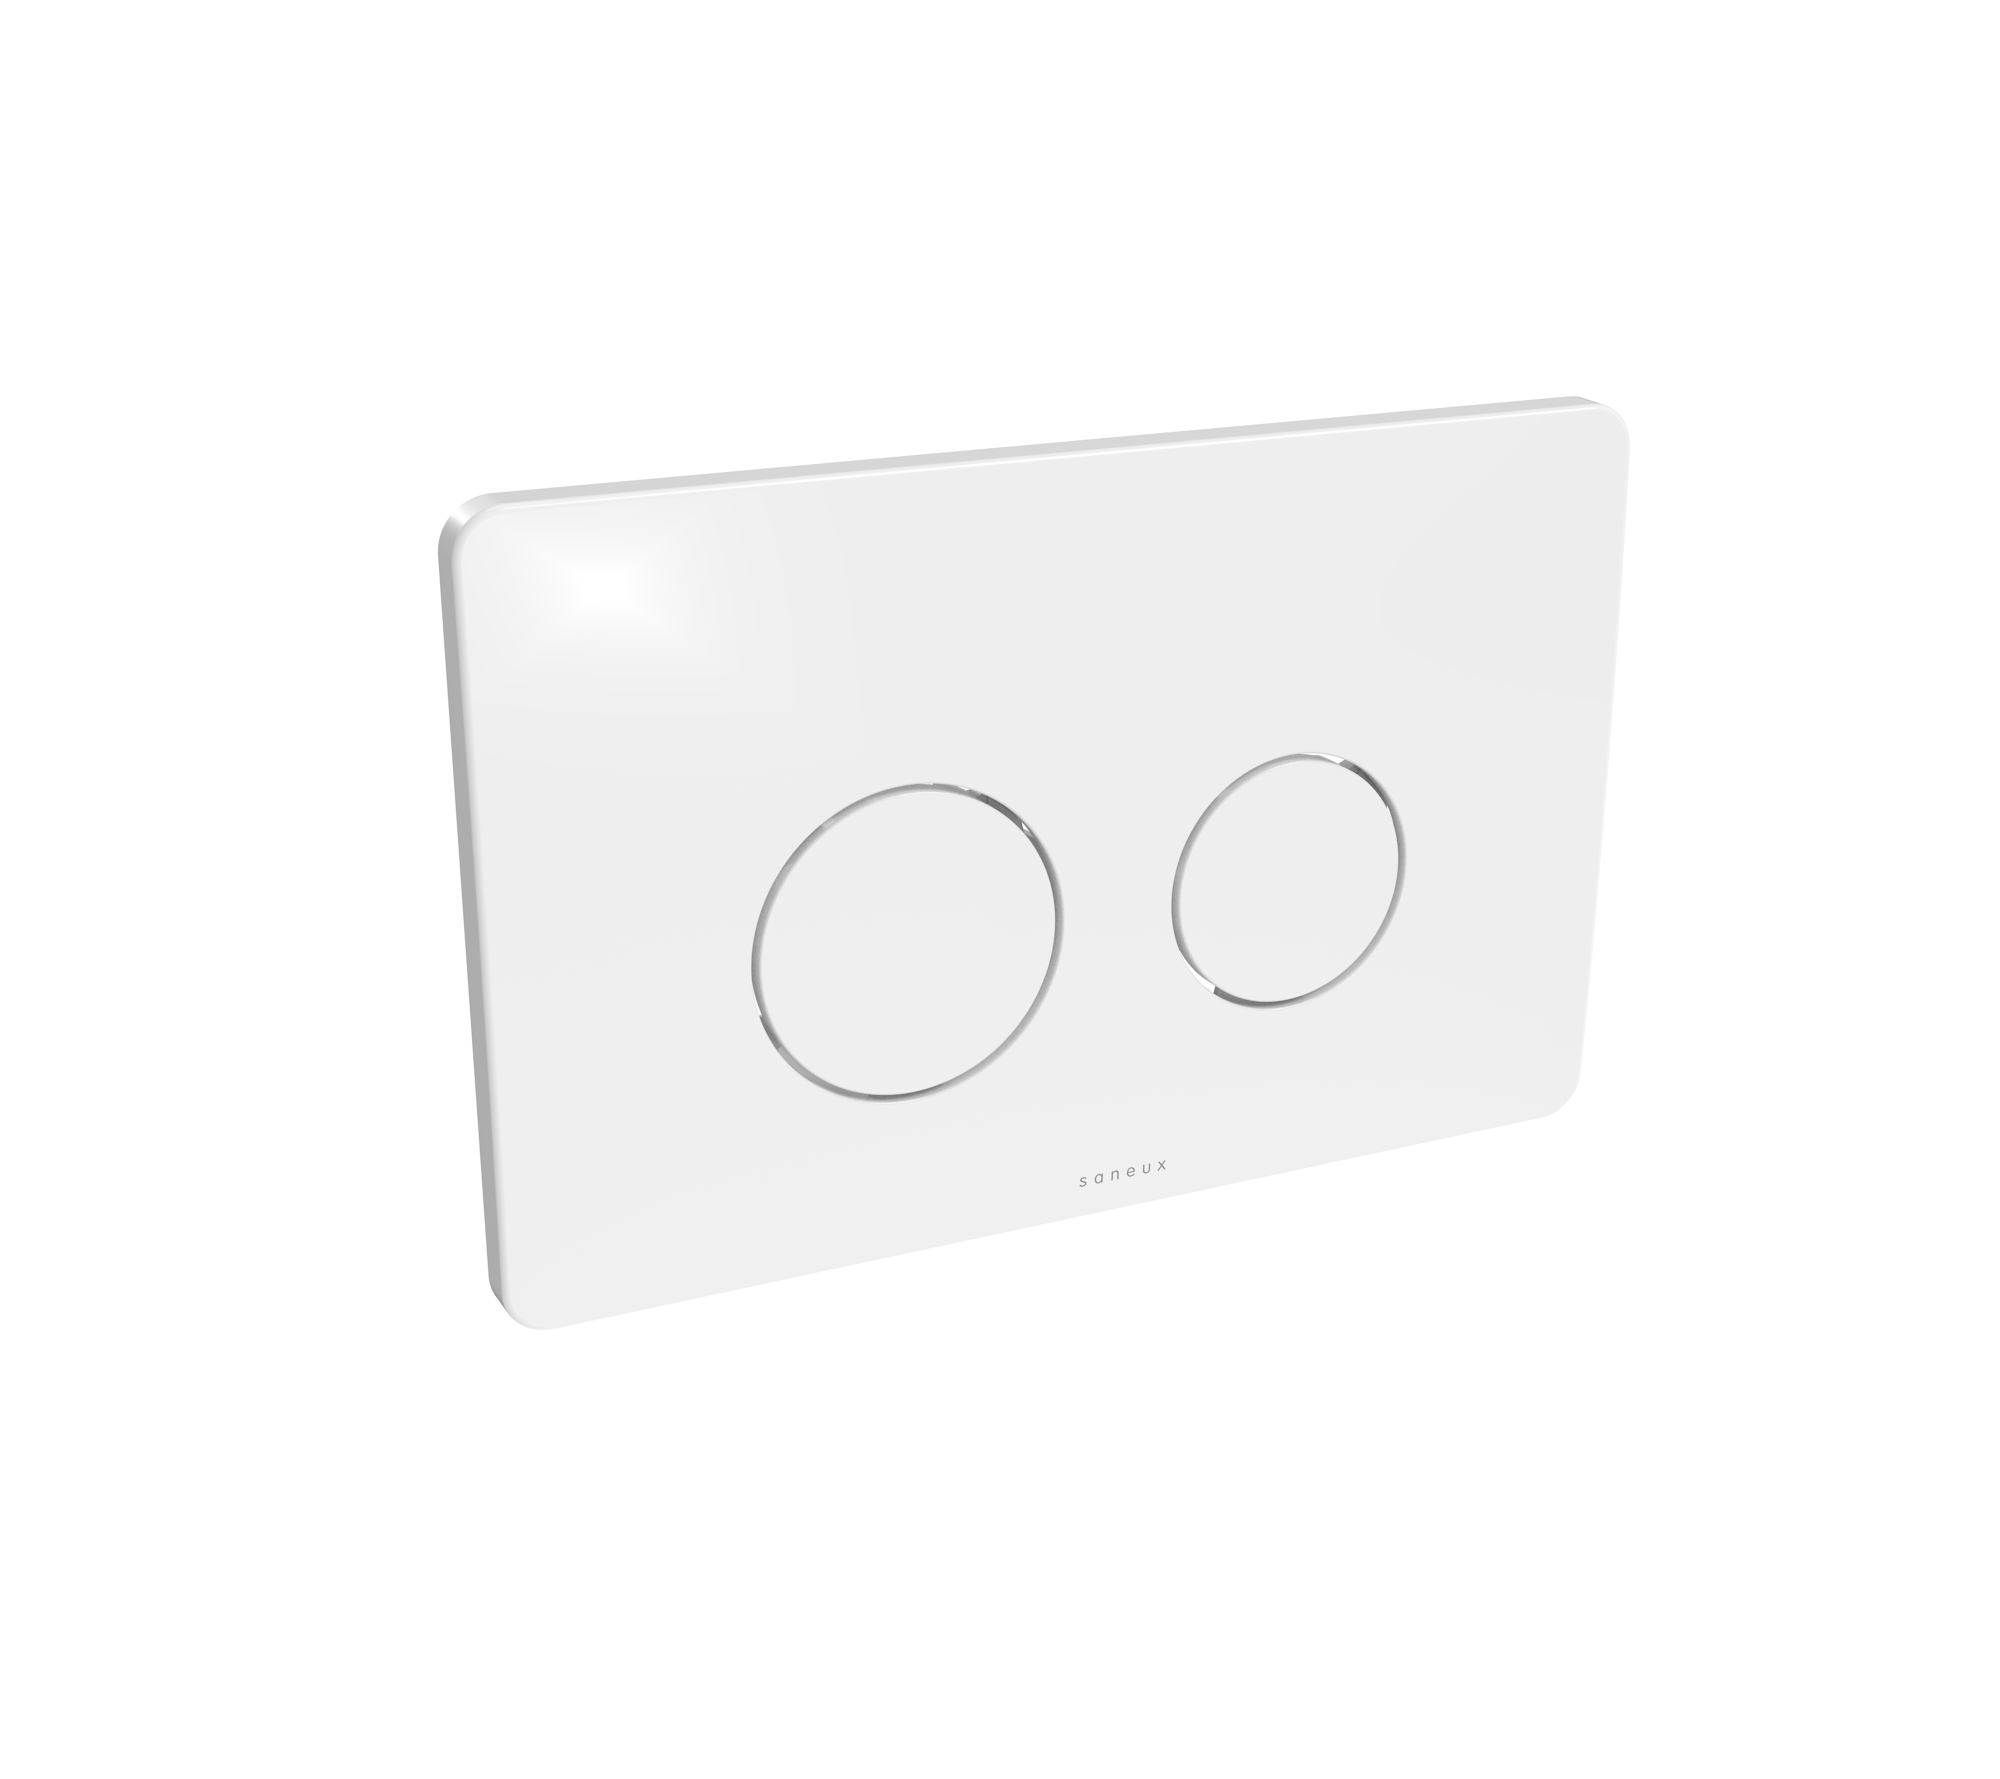 FLUSHE 2.0 dot flush plate - Gloss White